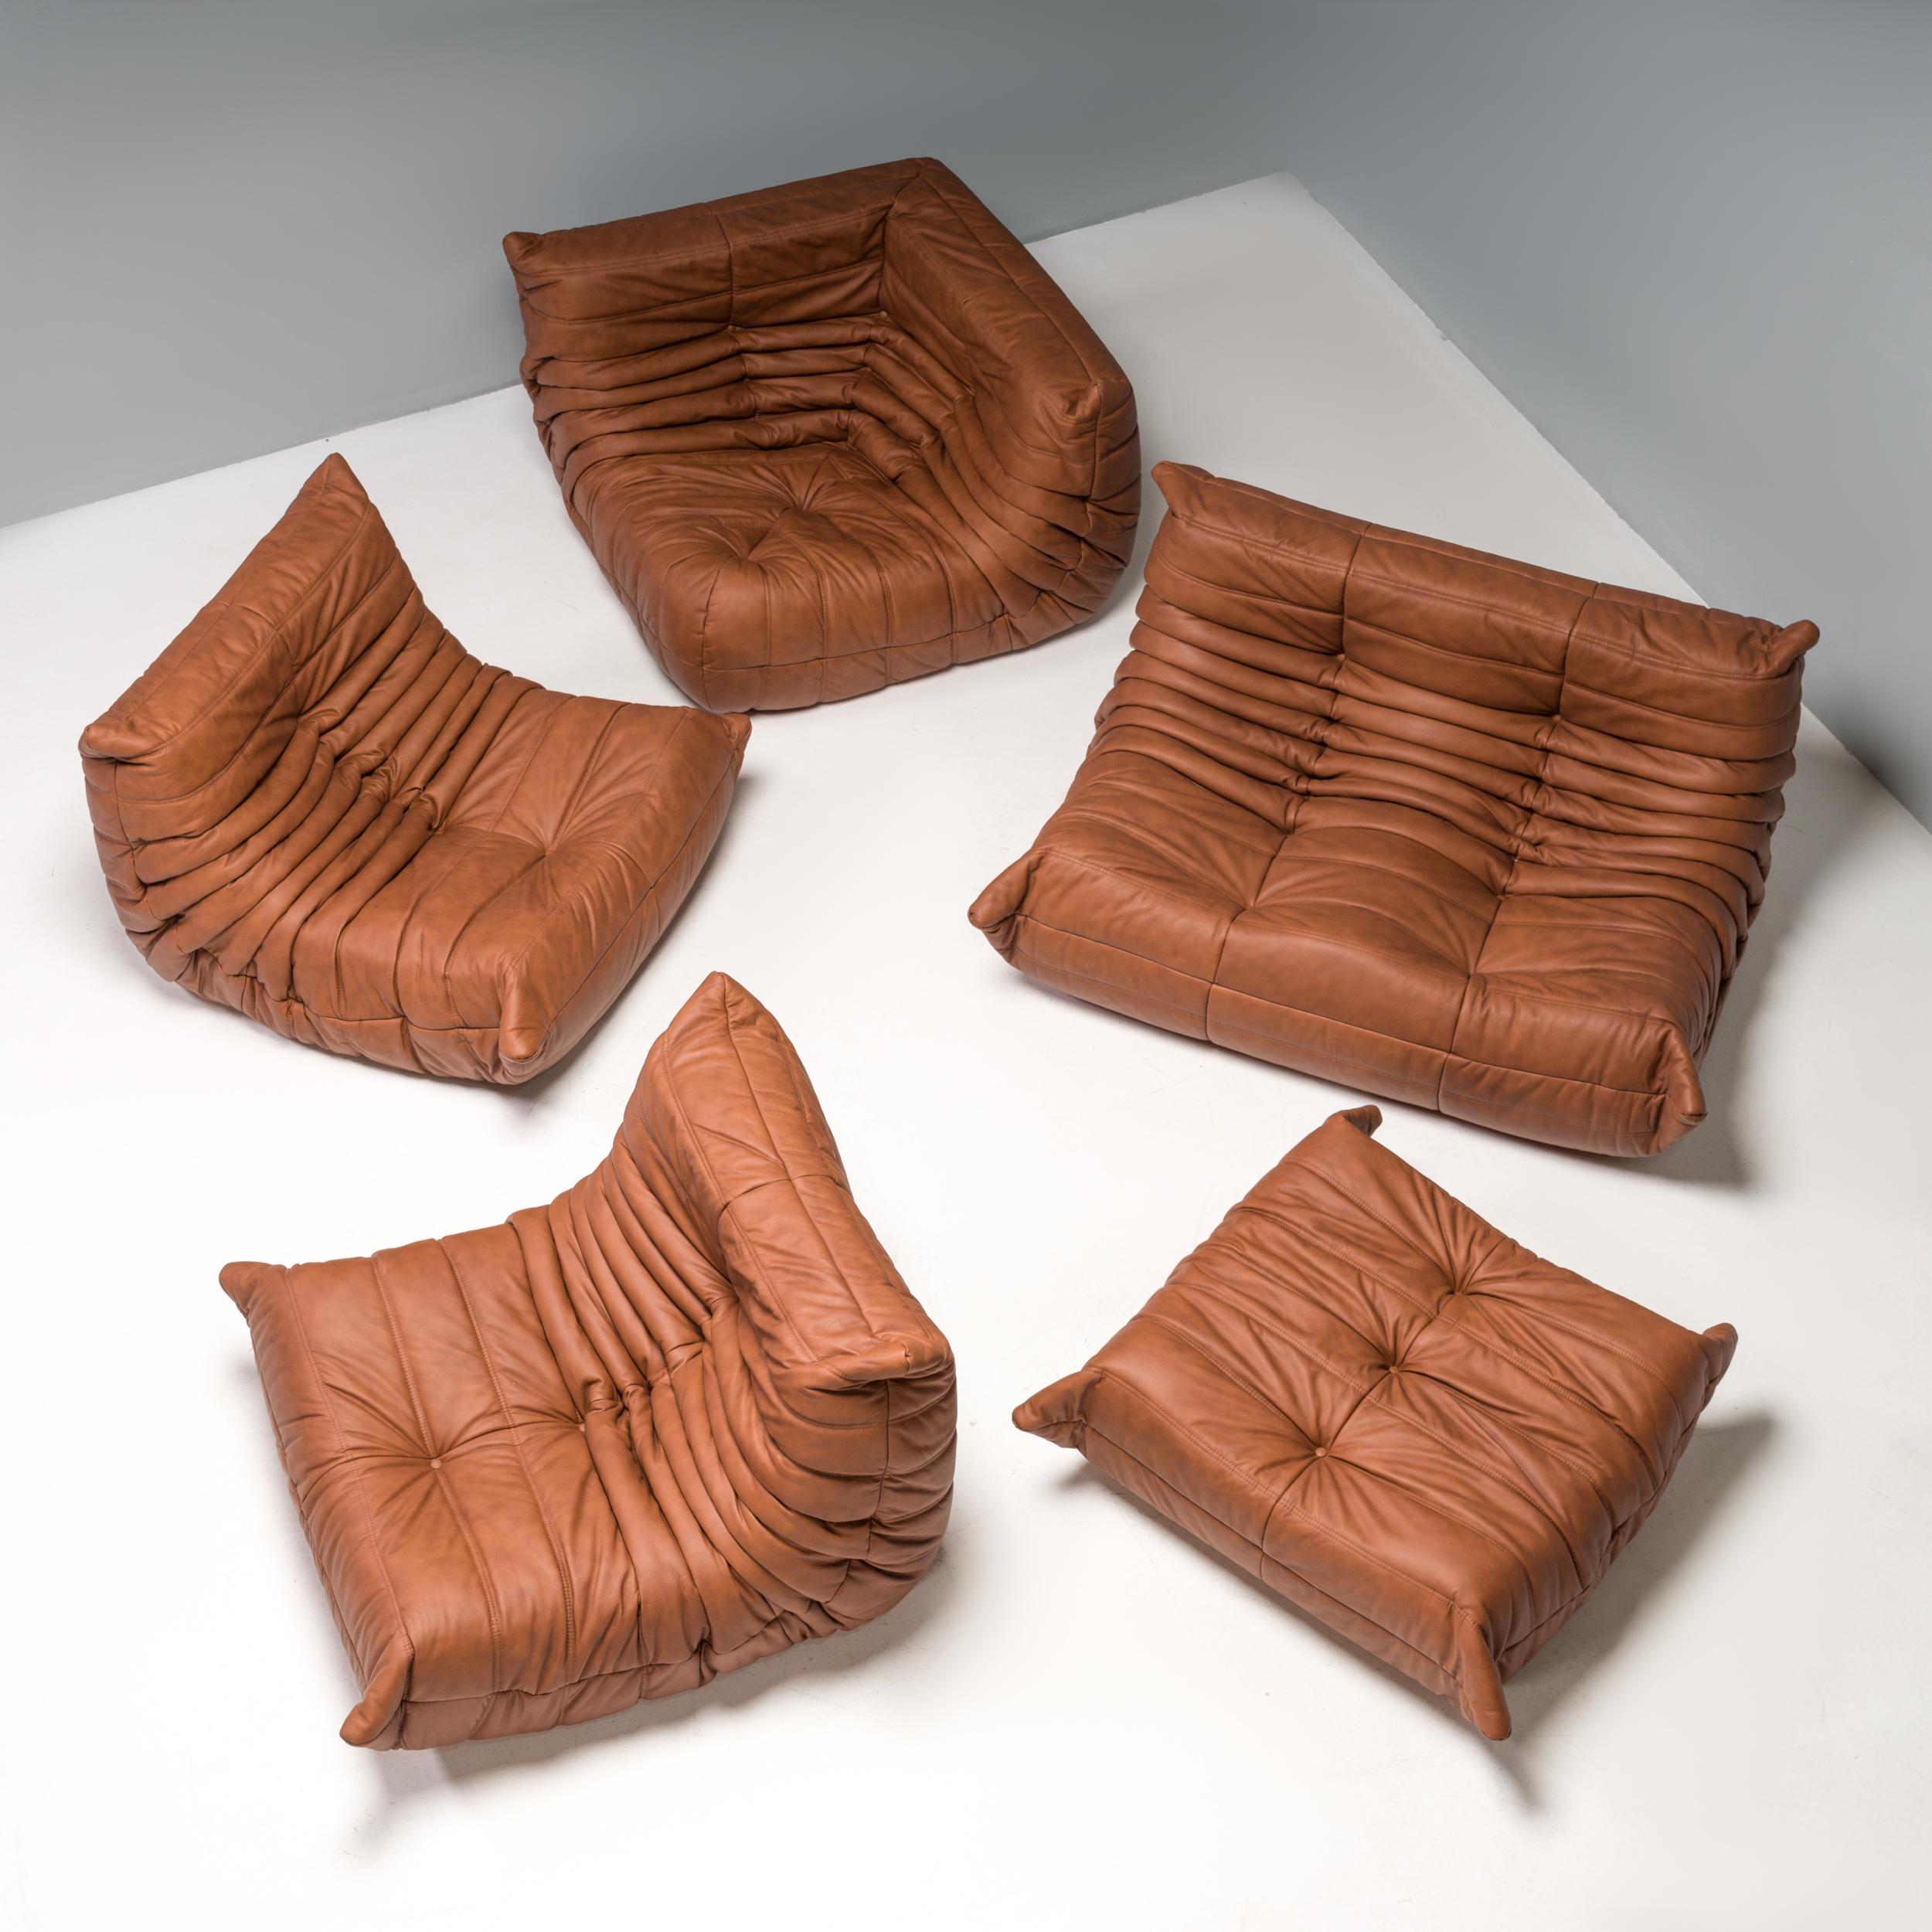 Das ikonische Sofa Togo, ursprünglich von Michel Ducaroy für Ligne Roset im Jahr 1973 entworfen, ist zu einem Designklassiker geworden.

Dieses fünfteilige modulare Set ist unglaublich vielseitig und kann zu einem großen Ecksofa konfiguriert oder